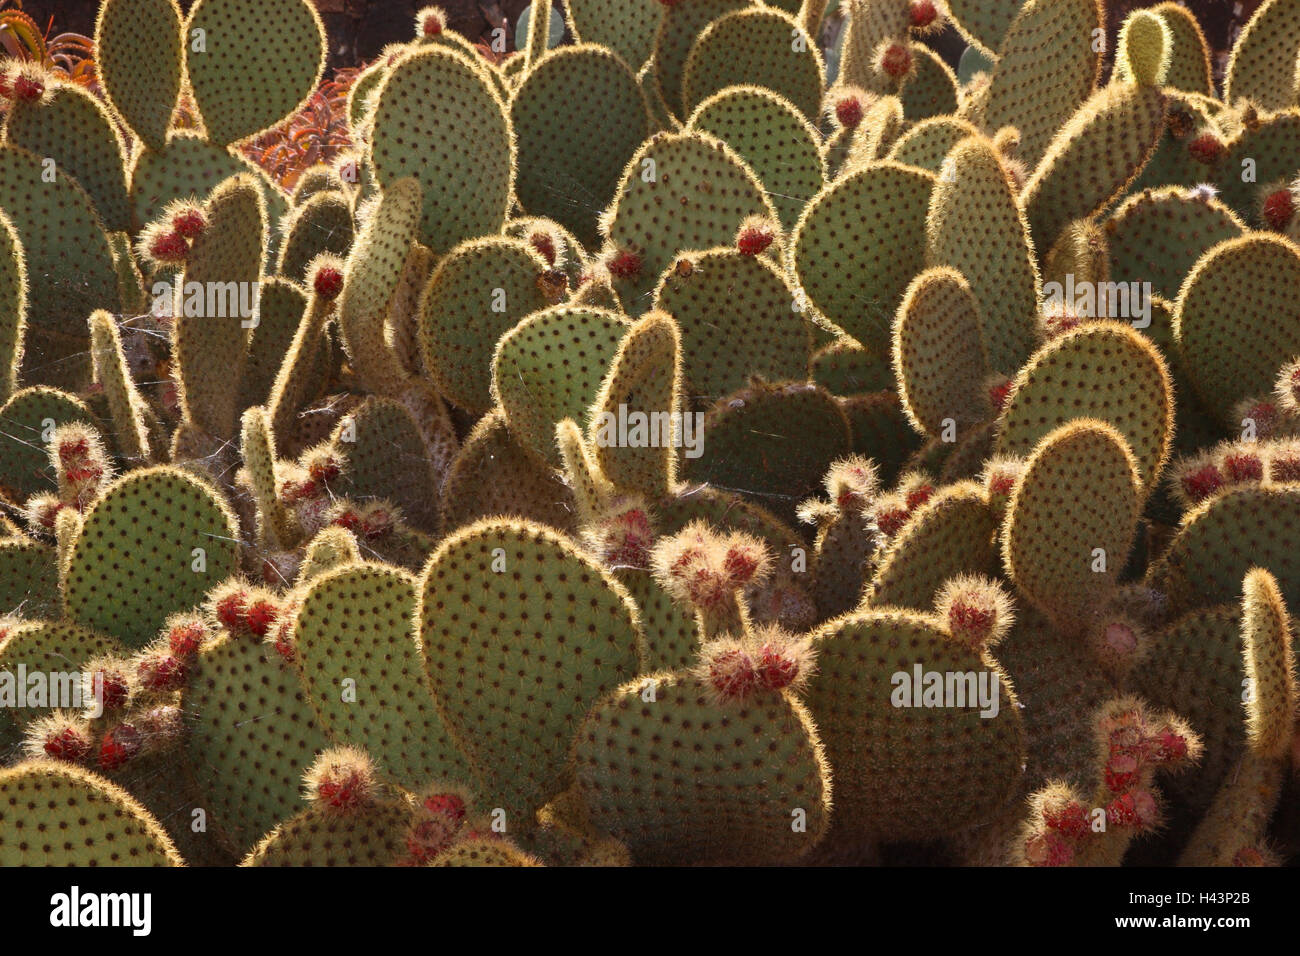 Los cactus, Opuntia microdasys, Foto de stock